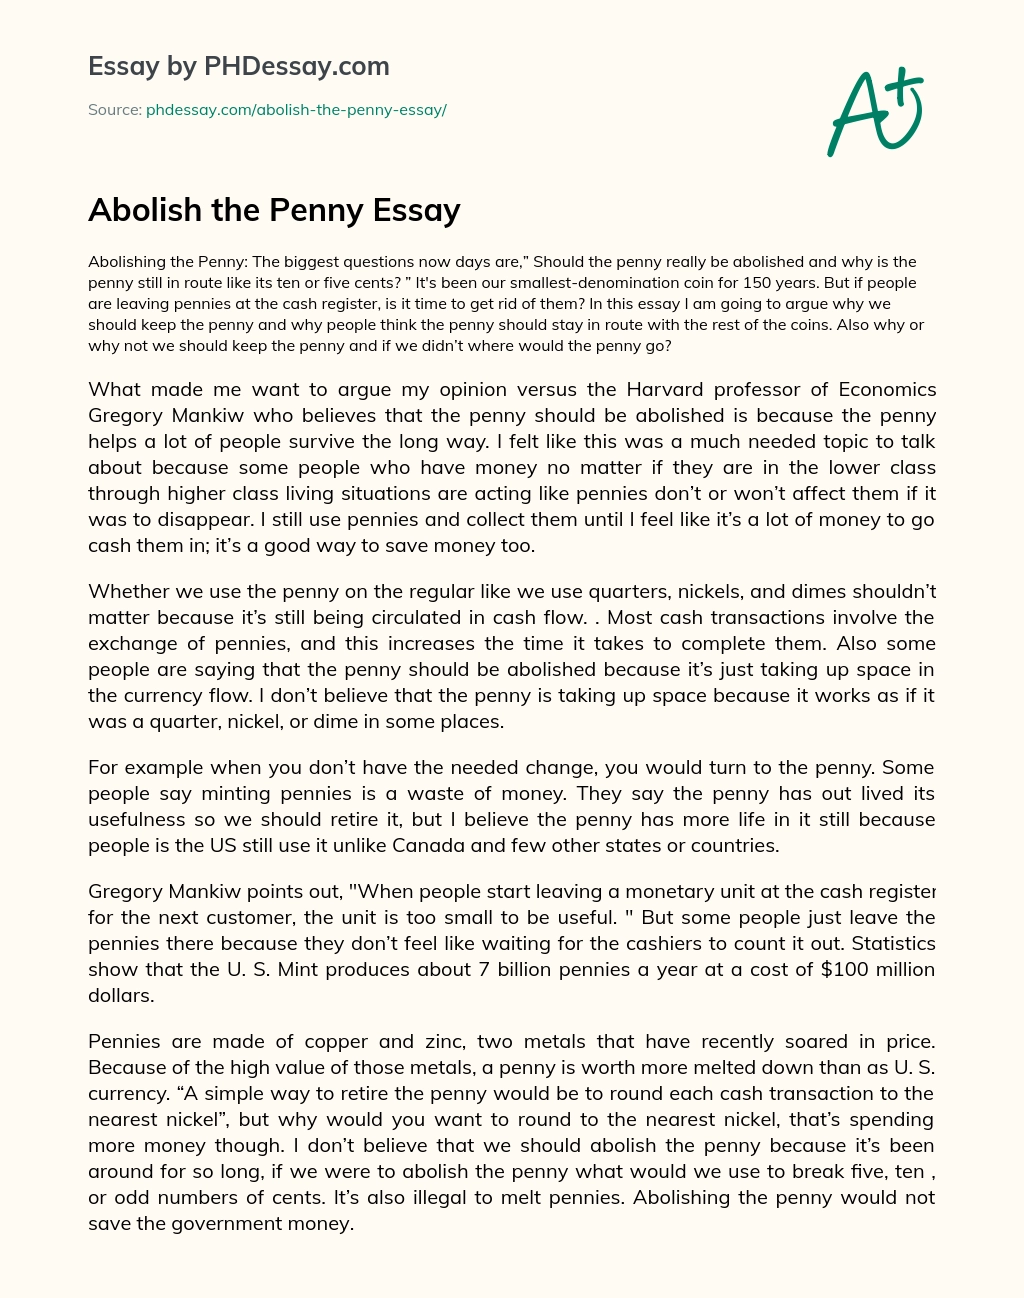 Abolish the Penny Essay essay